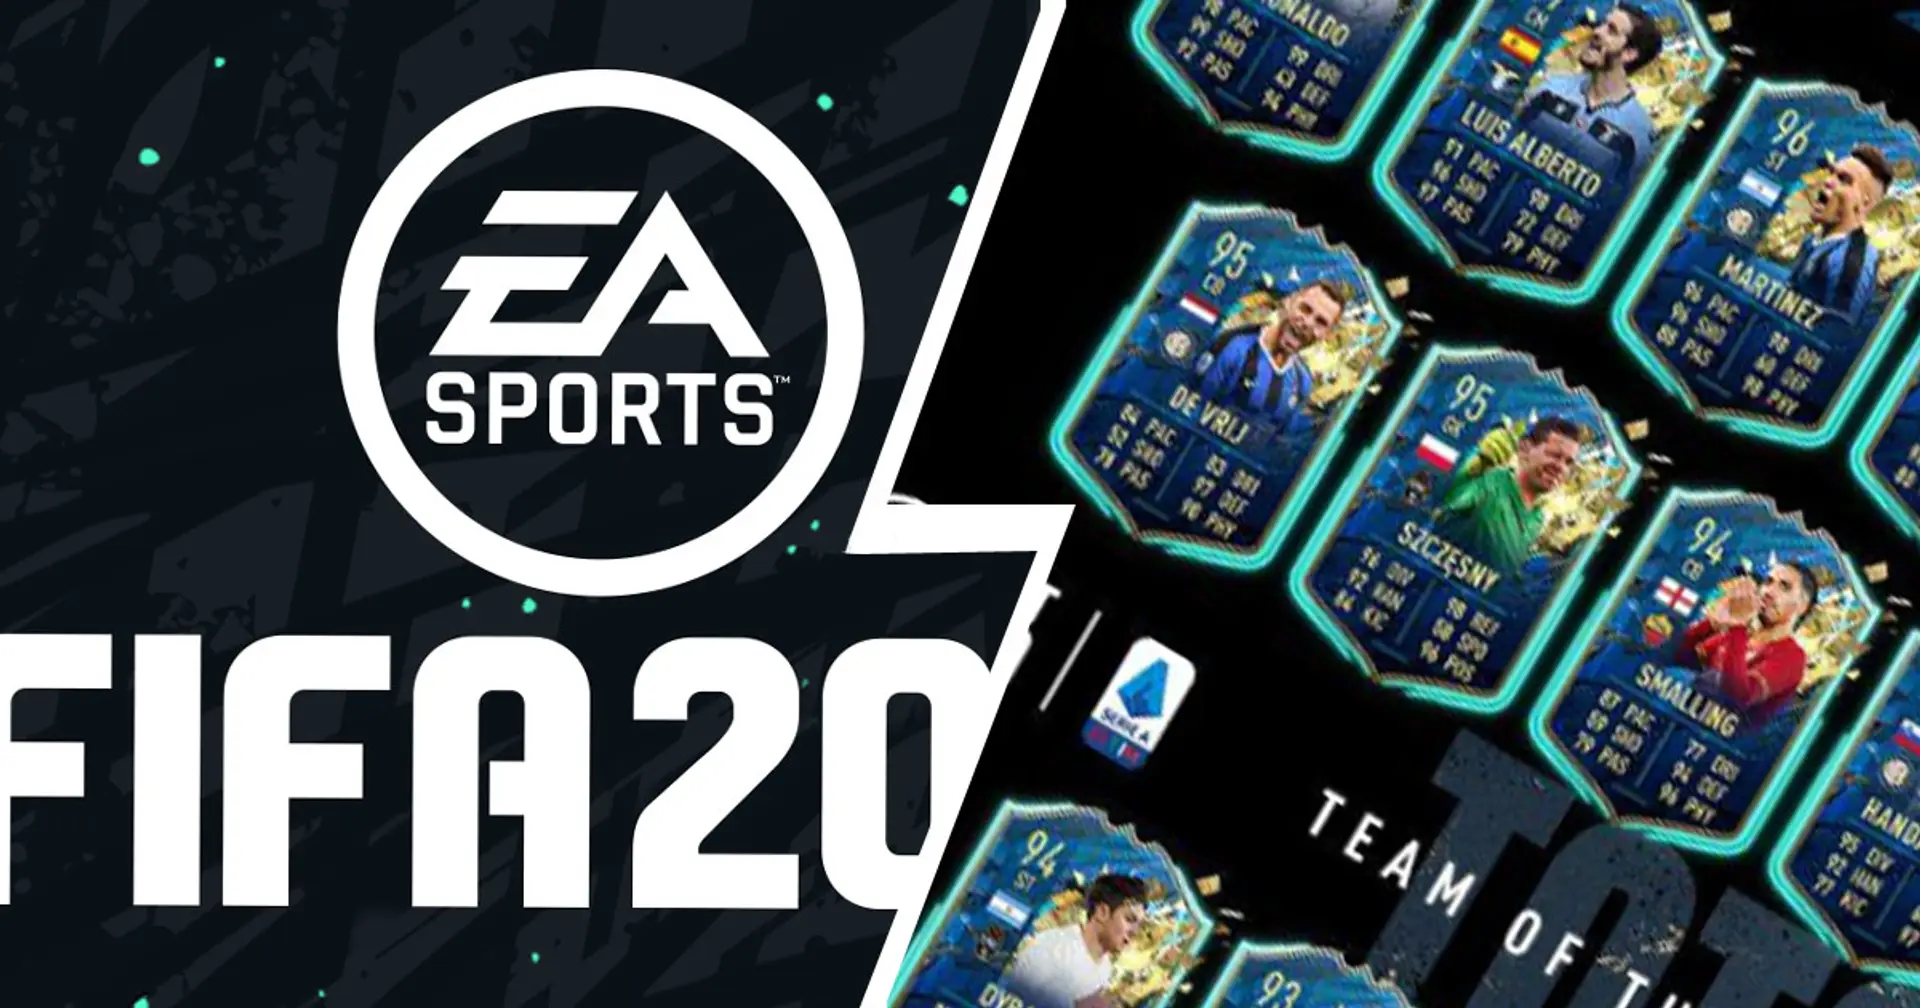 EA Sports elegge la Top 20 della Serie A 2019/20: c'è anche un rossonero tra i migliori